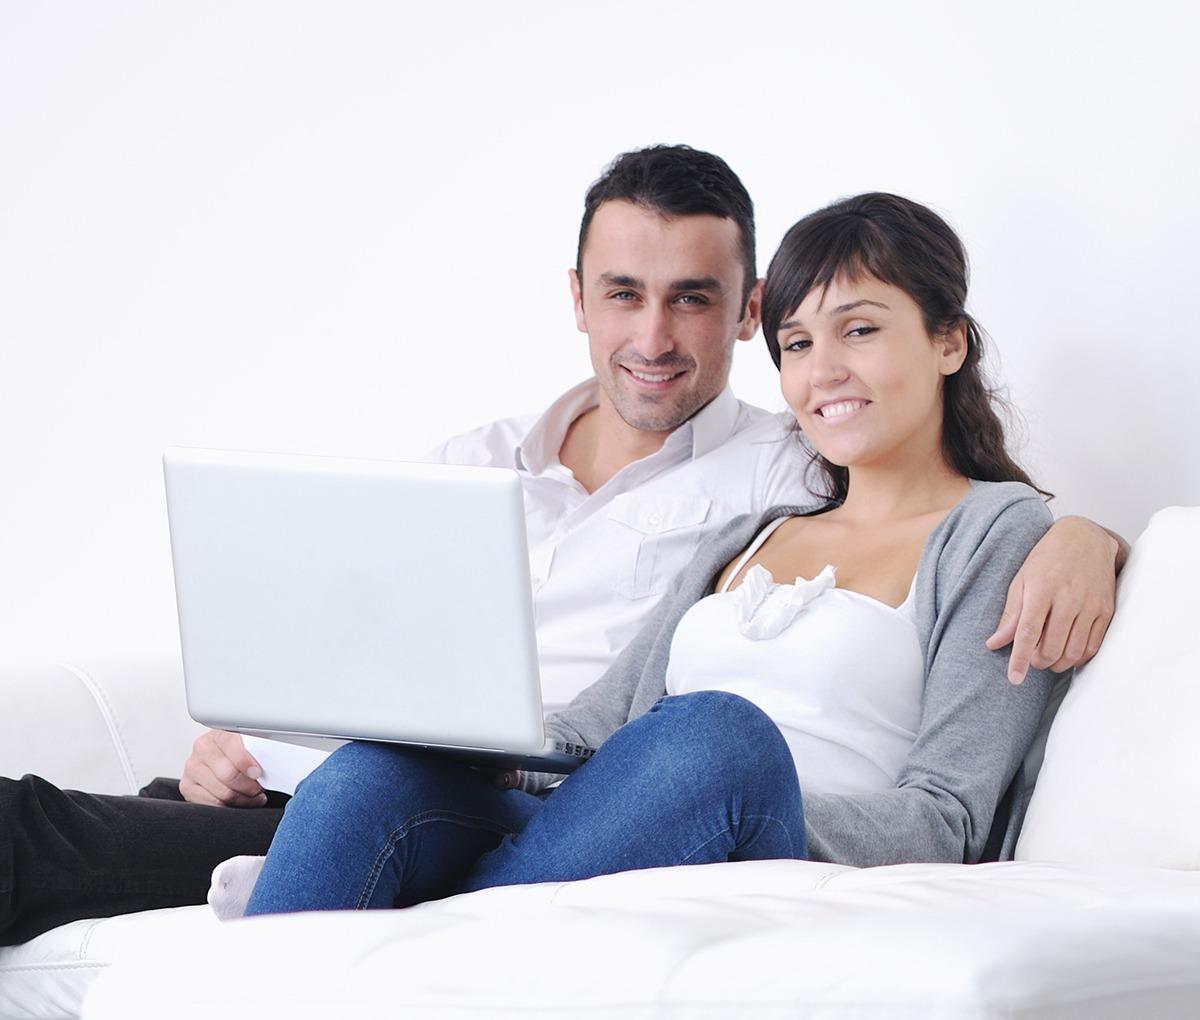 Mies ja nainen istuvat sohvalla hymyillen